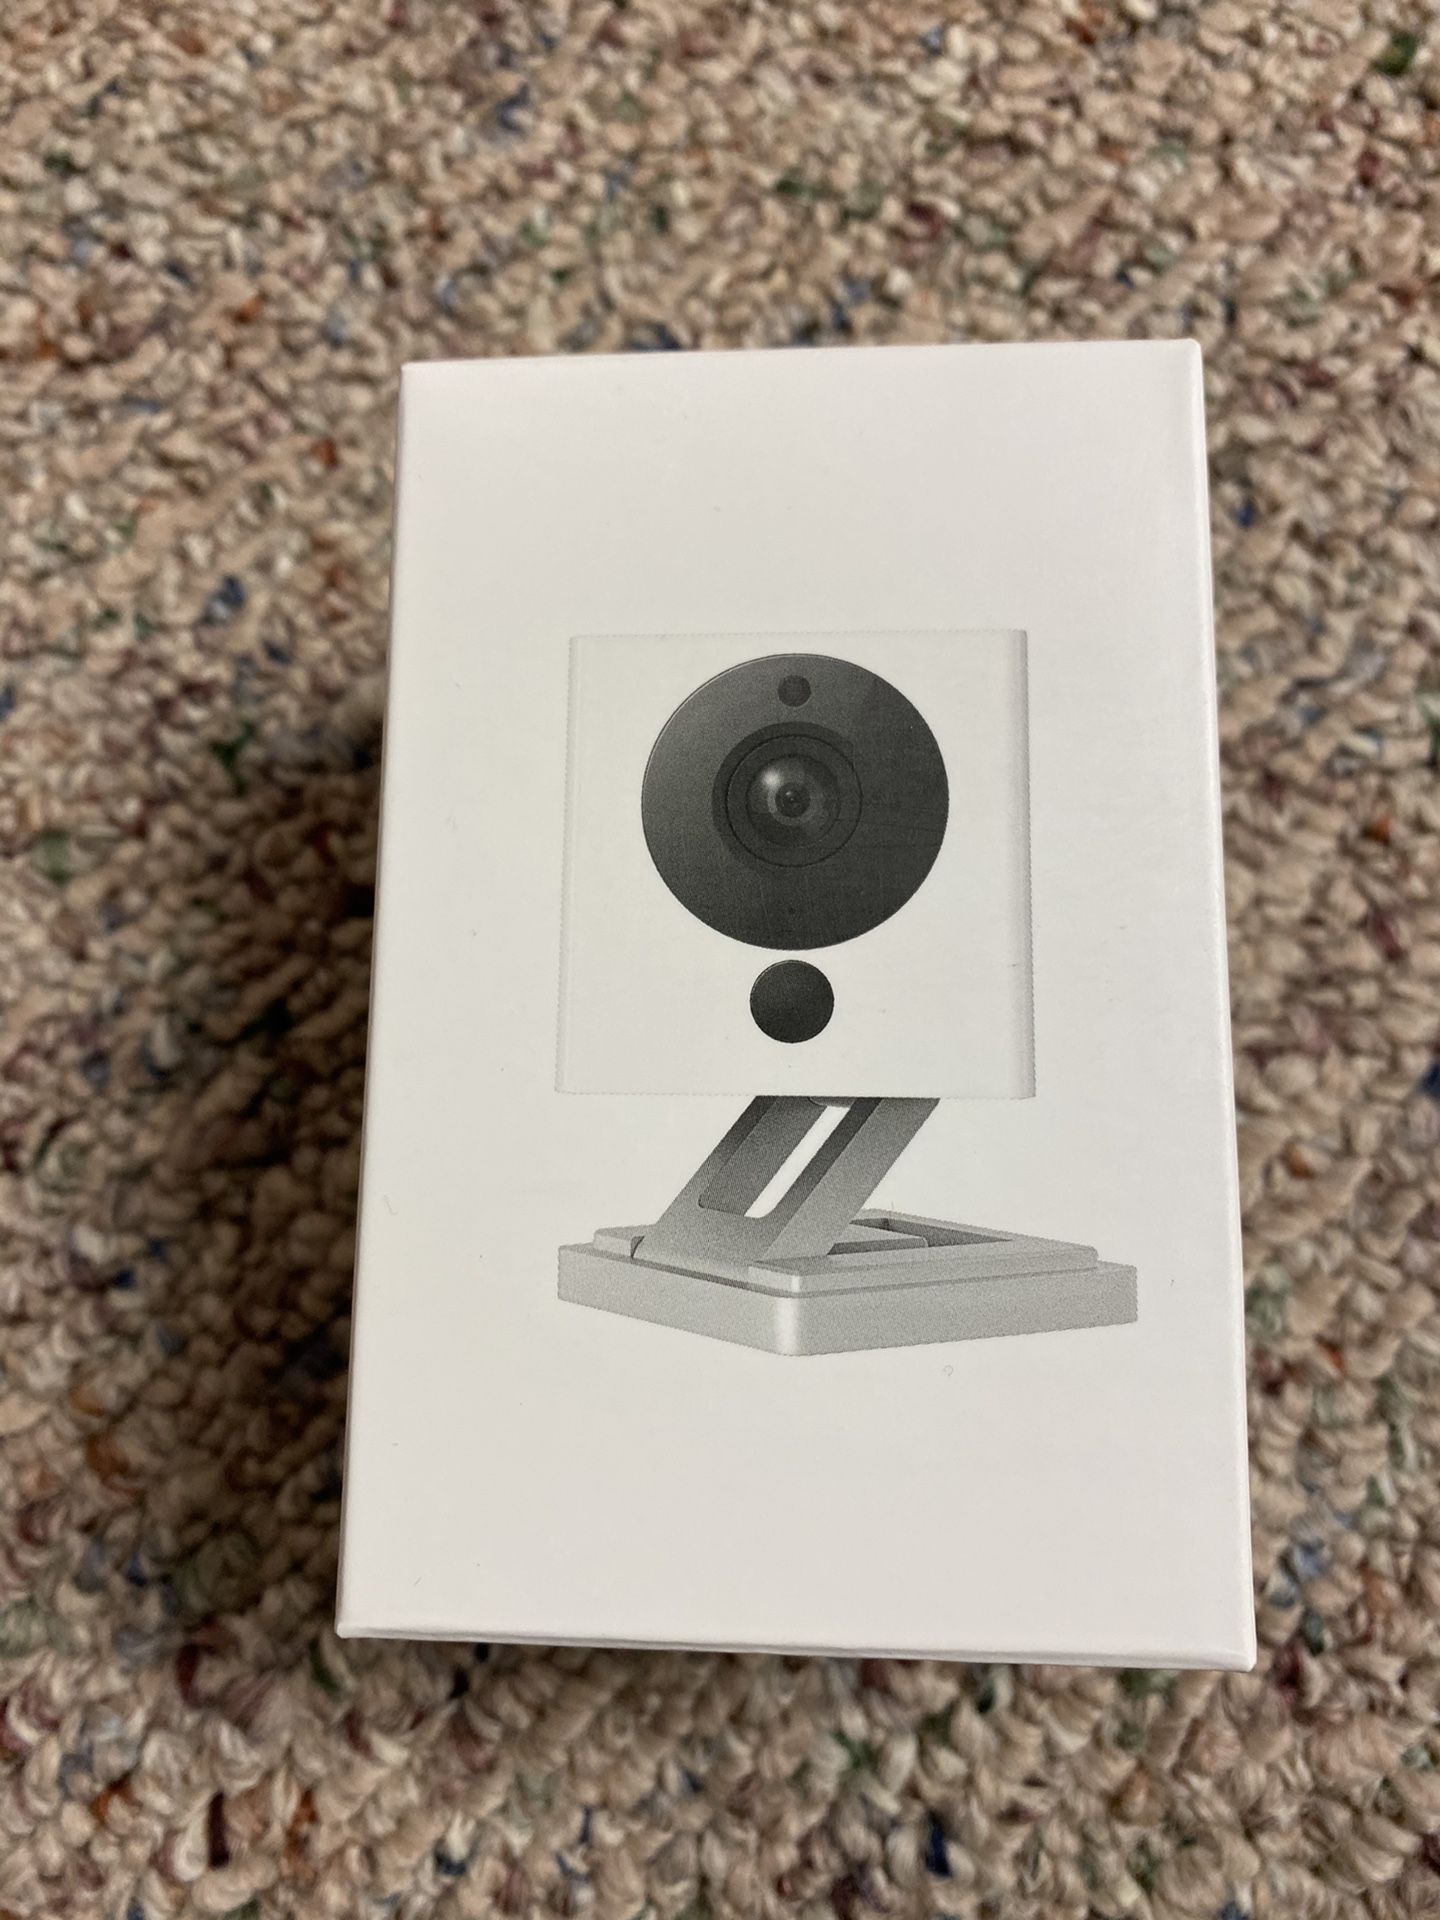 New white Wyze Cam/ nest / ring doorbell / security / camera / google chromecast / Roku